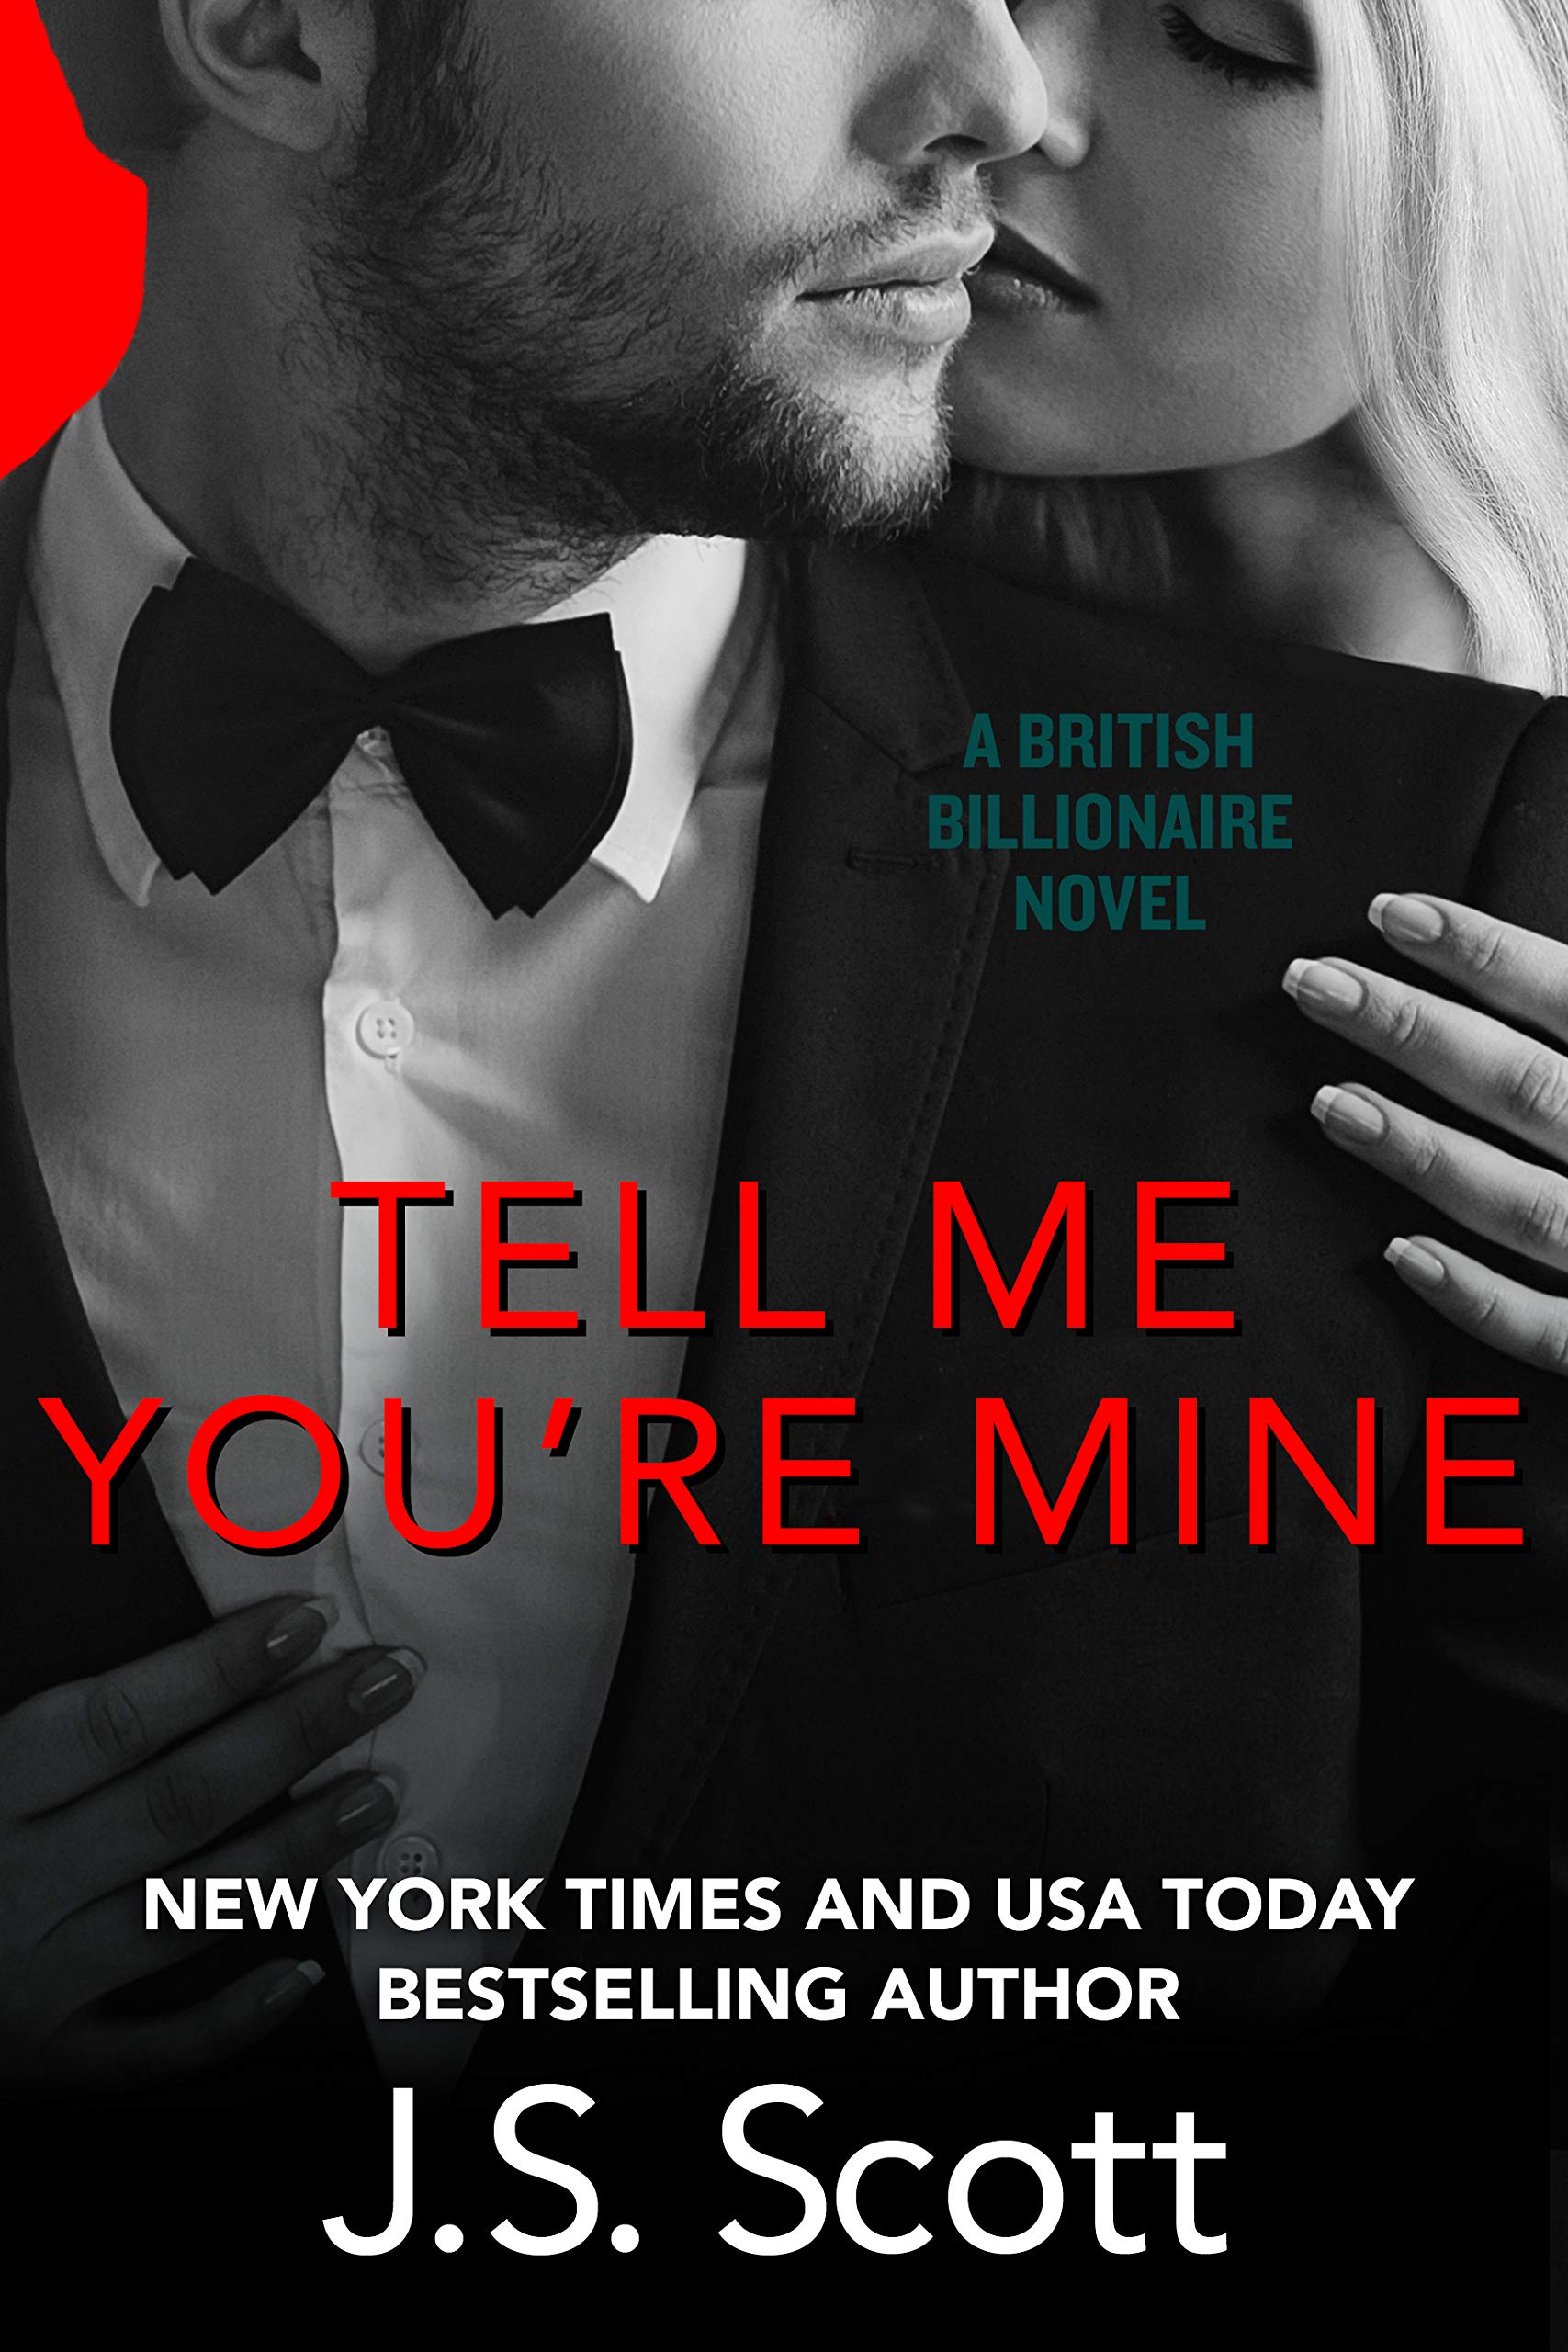 [EPUB] The British Billionaires #1 Tell Me You're Mine by J.S. Scott